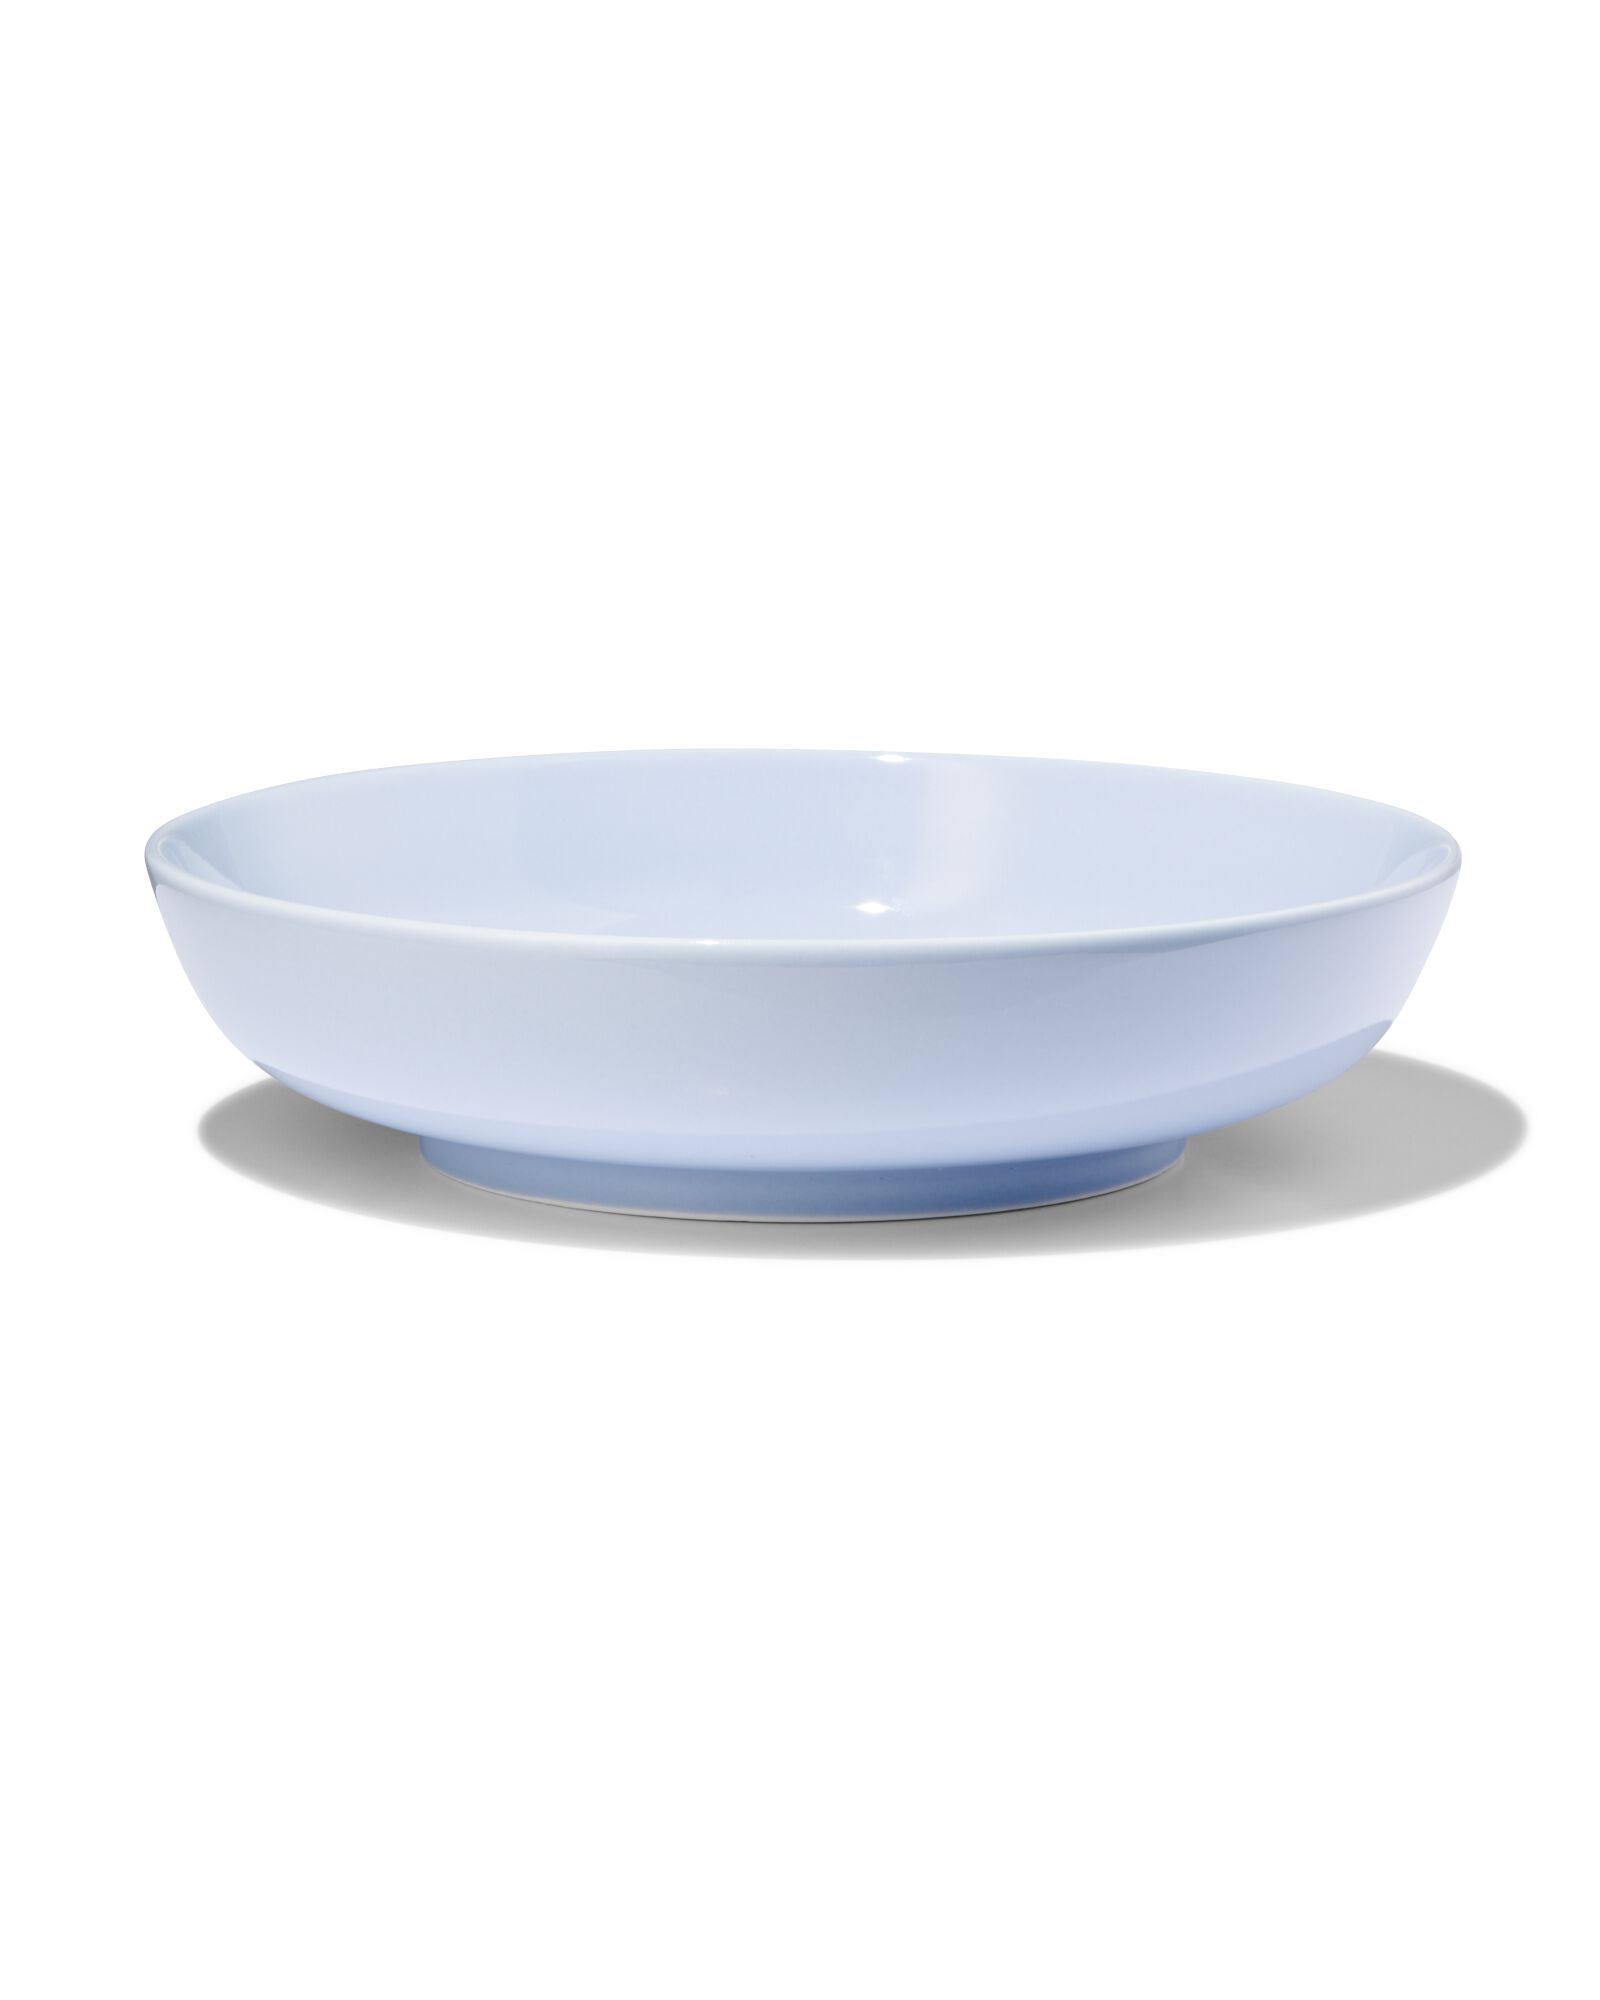 hema assiette creuse ø22cm - new bone bleu - vaisselle dépareillée (bleu clair)